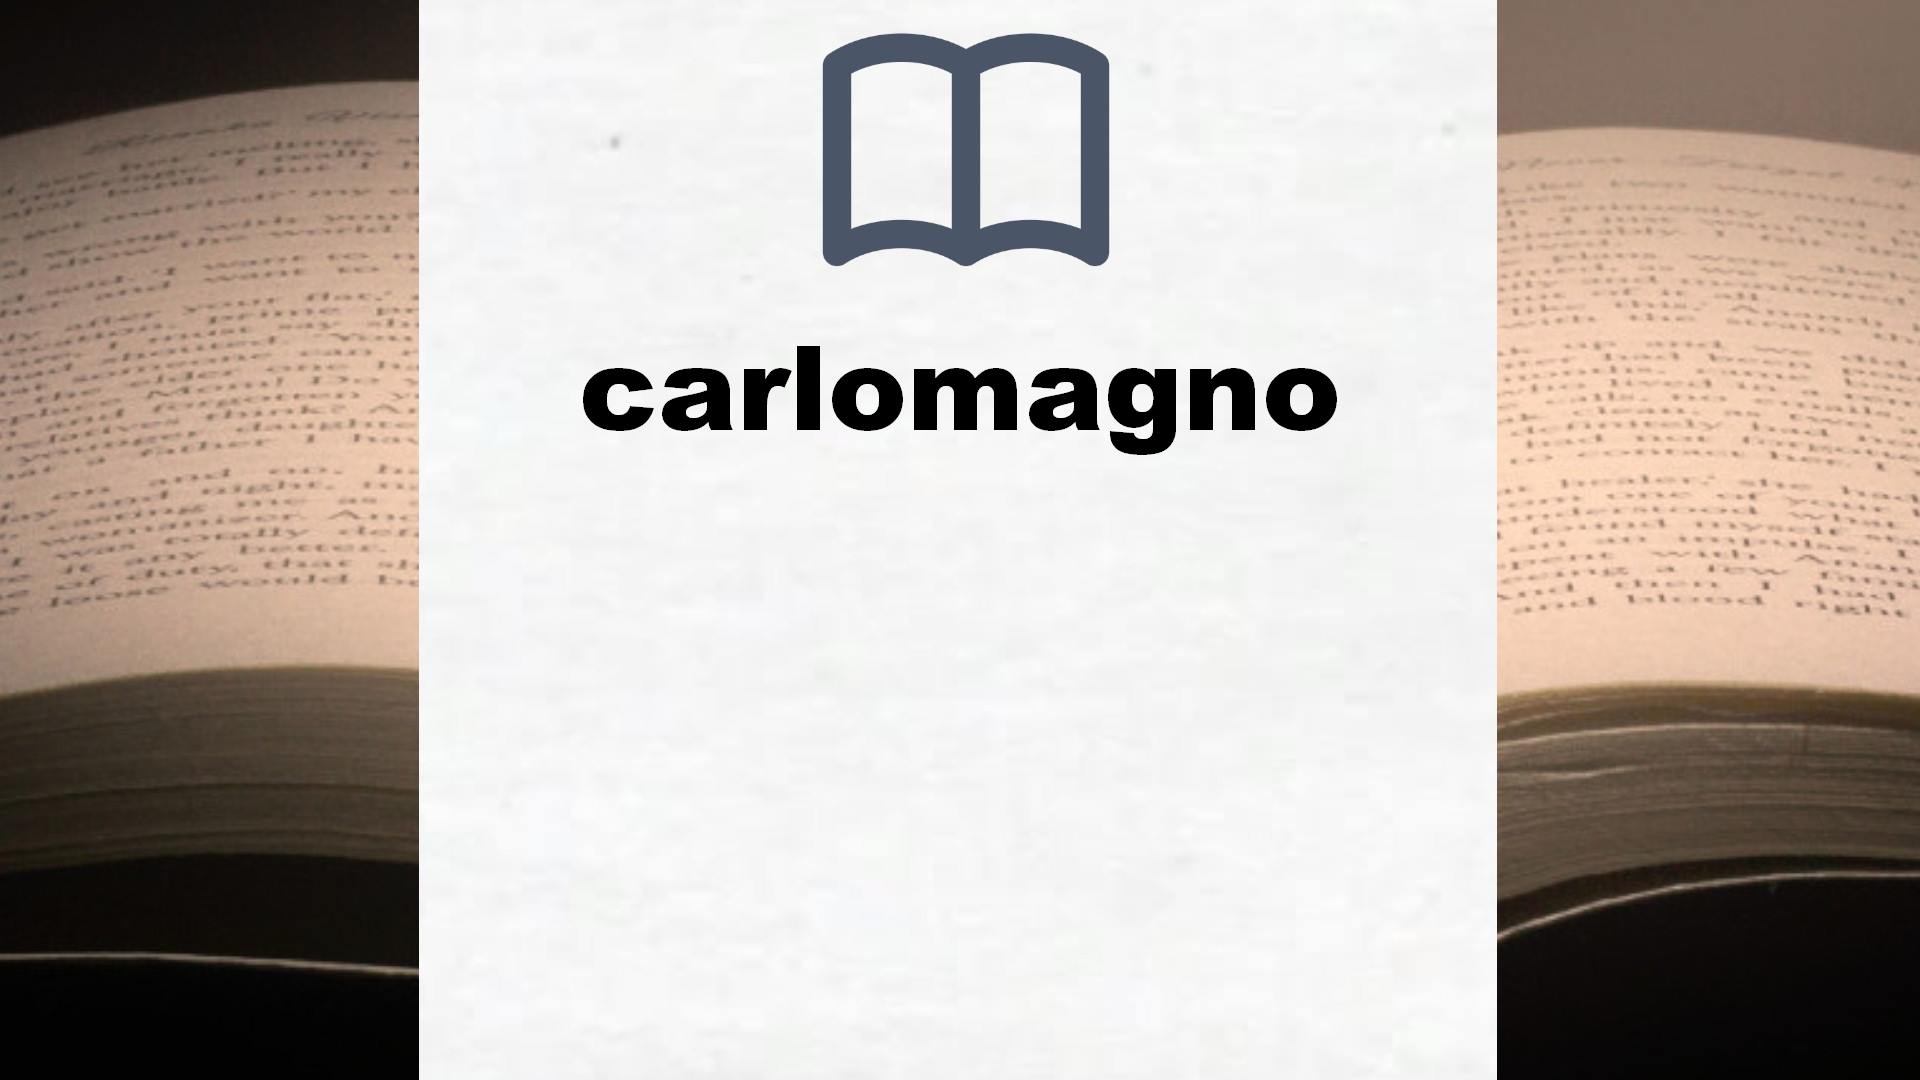 Libros sobre carlomagno